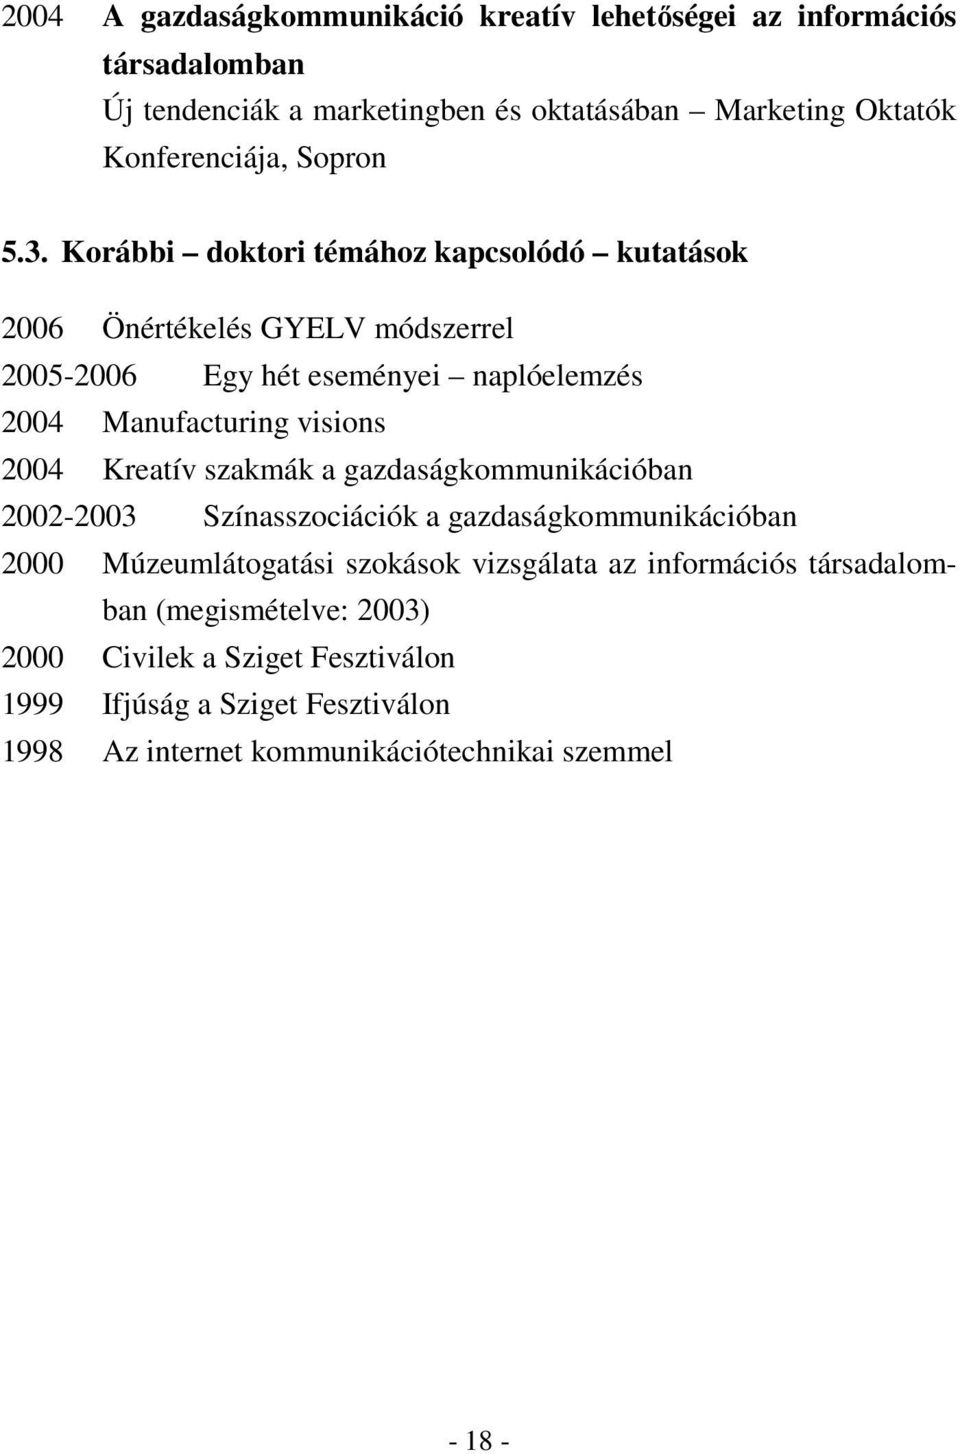 Korábbi doktori témához kapcsolódó kutatások 2006 Önértékelés GYELV módszerrel 2005-2006 Egy hét eseményei naplóelemzés 2004 Manufacturing visions 2004